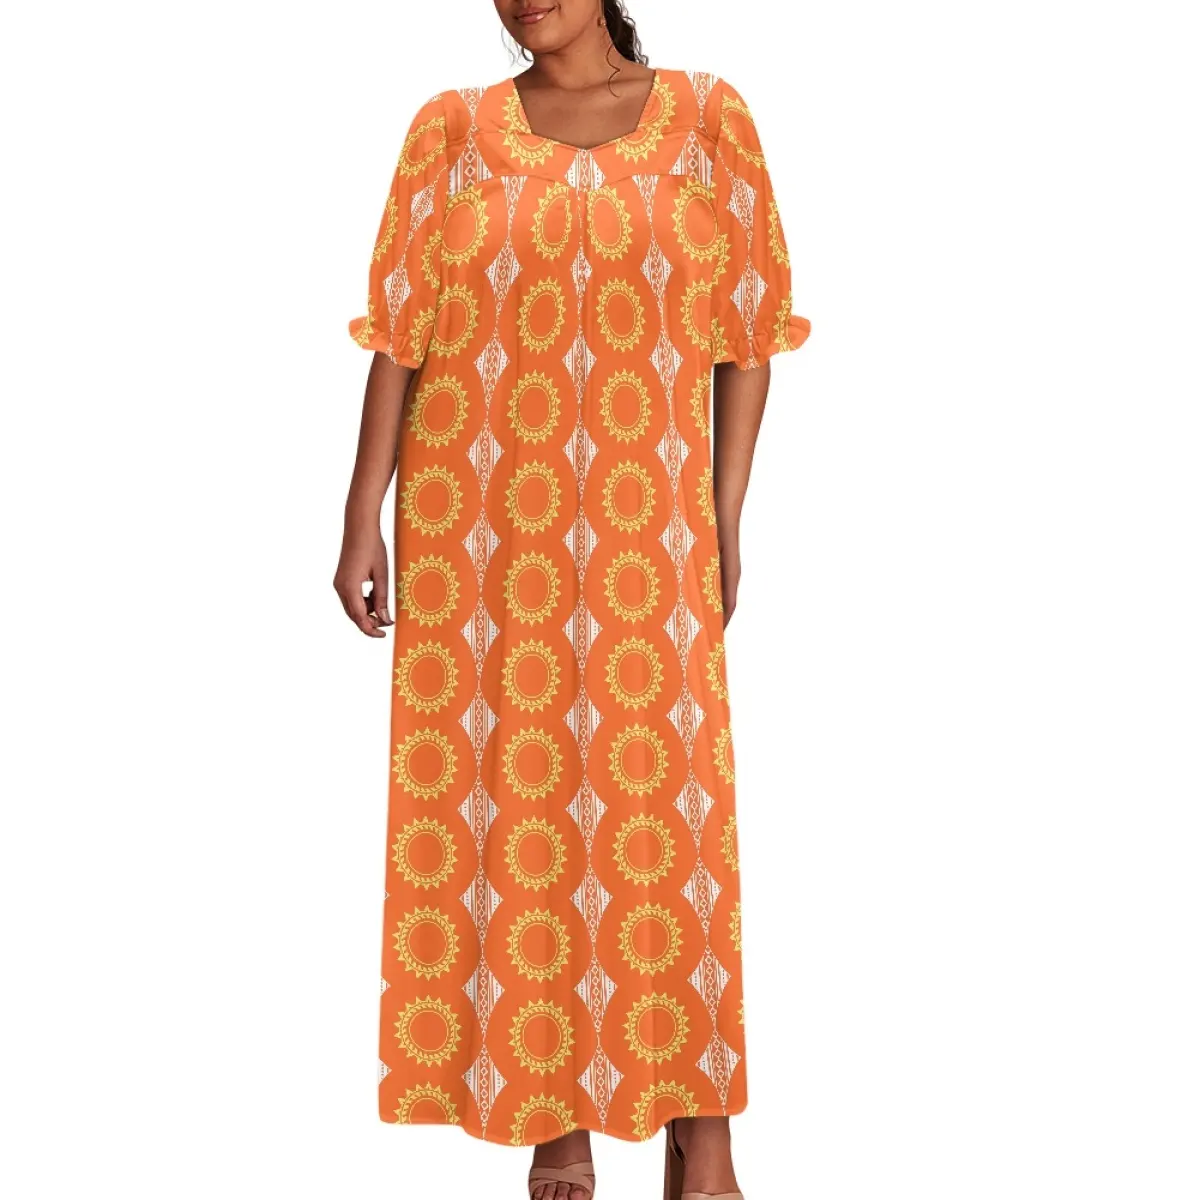 Personalizado vestido polinésio Samoan Tribal impressão Vintage plissado manga gola quadrada vestidos longos para mulheres saias de maternidade